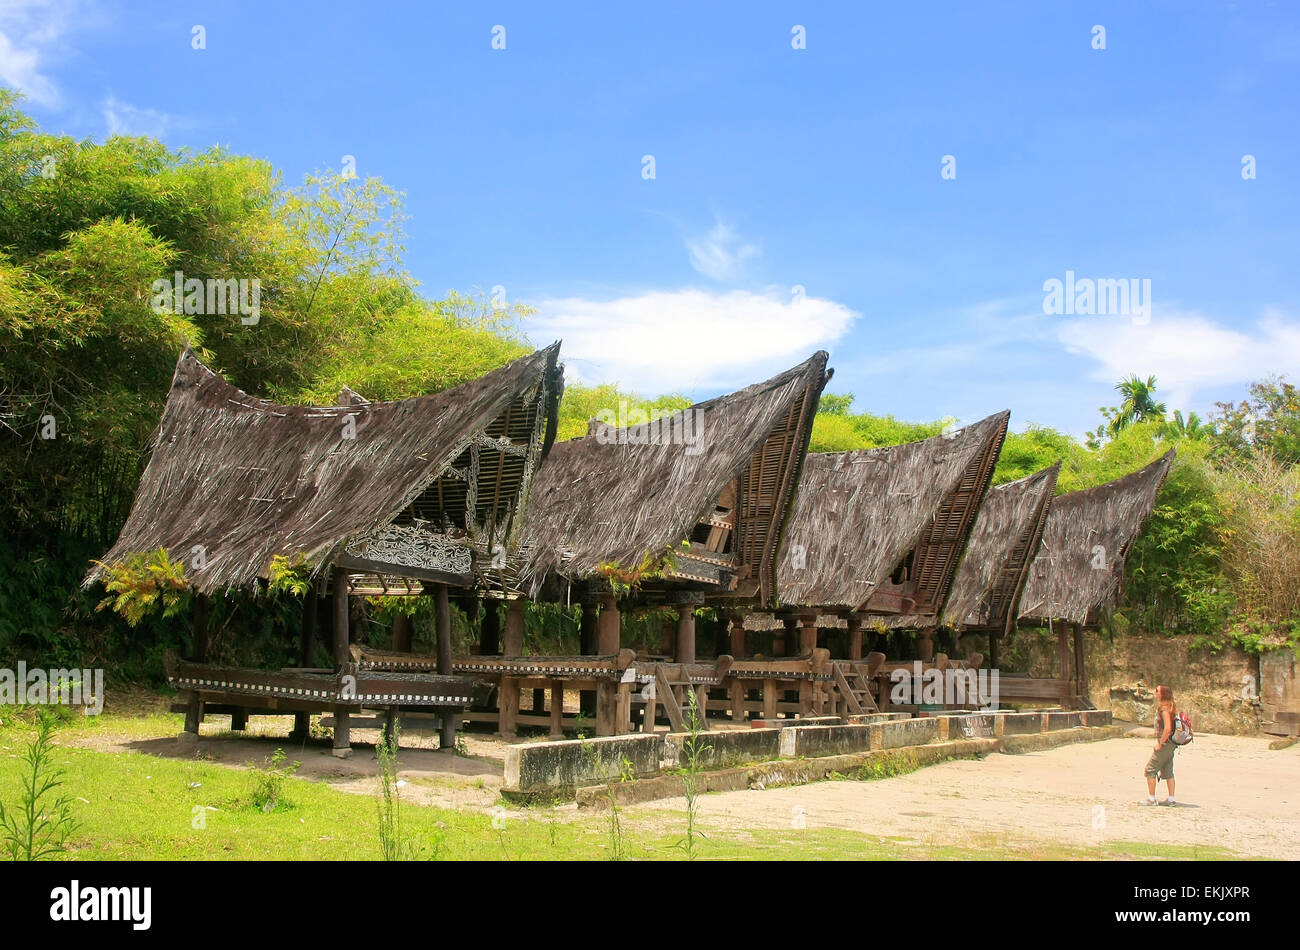 Maisons Batak traditionnel sur l'île de Samosir, Sumatra, Indonésie, Asie du sud-est Banque D'Images